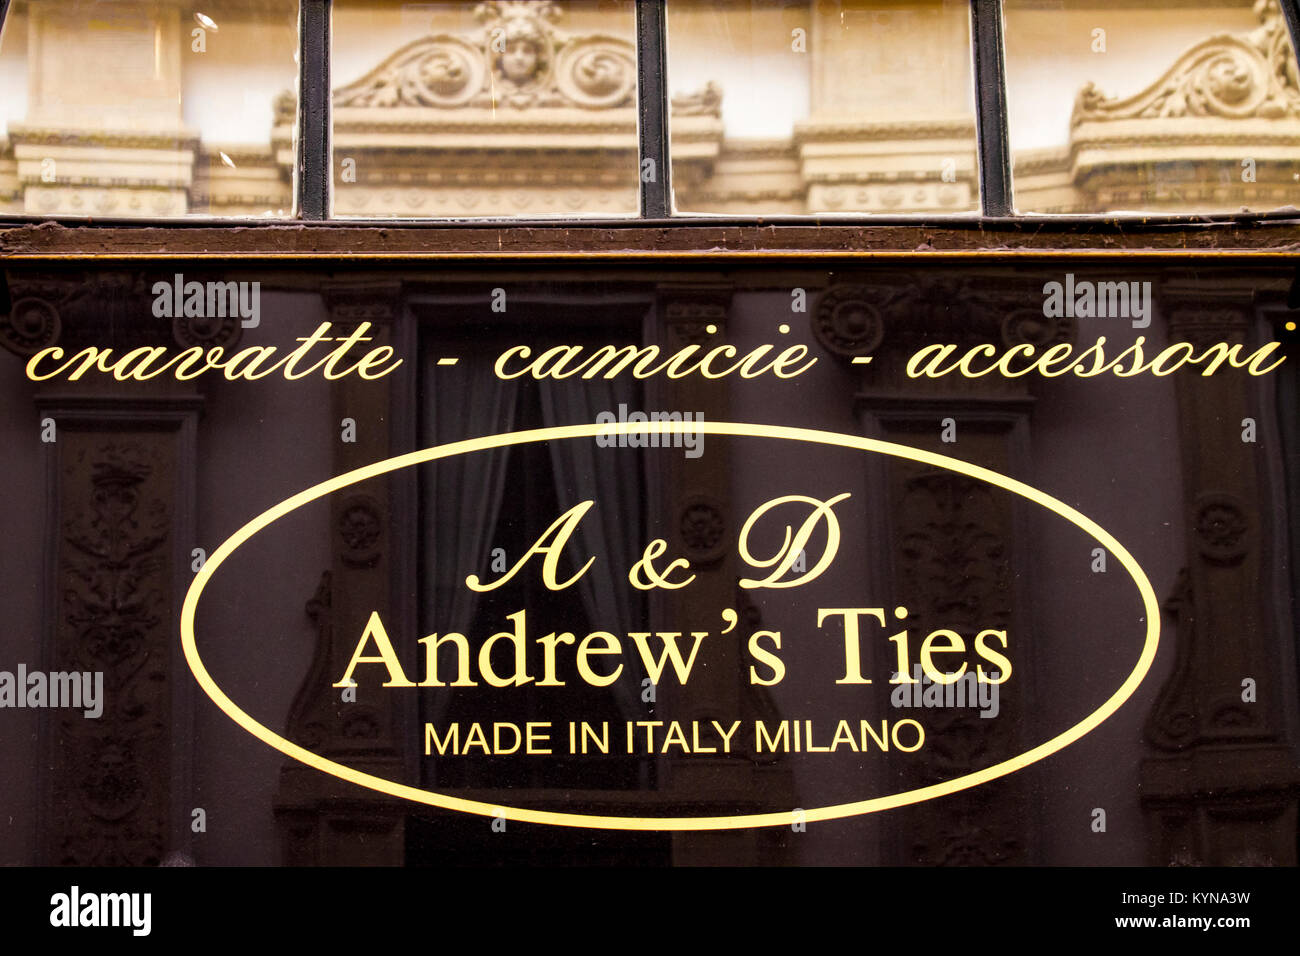 MILAN, ITALIE - 28 avril 2017 : Détail de Andrew's tie magasin à Milan, Italie. Il s'agit d'une entreprise de mode italienne fondée en 2010. Banque D'Images